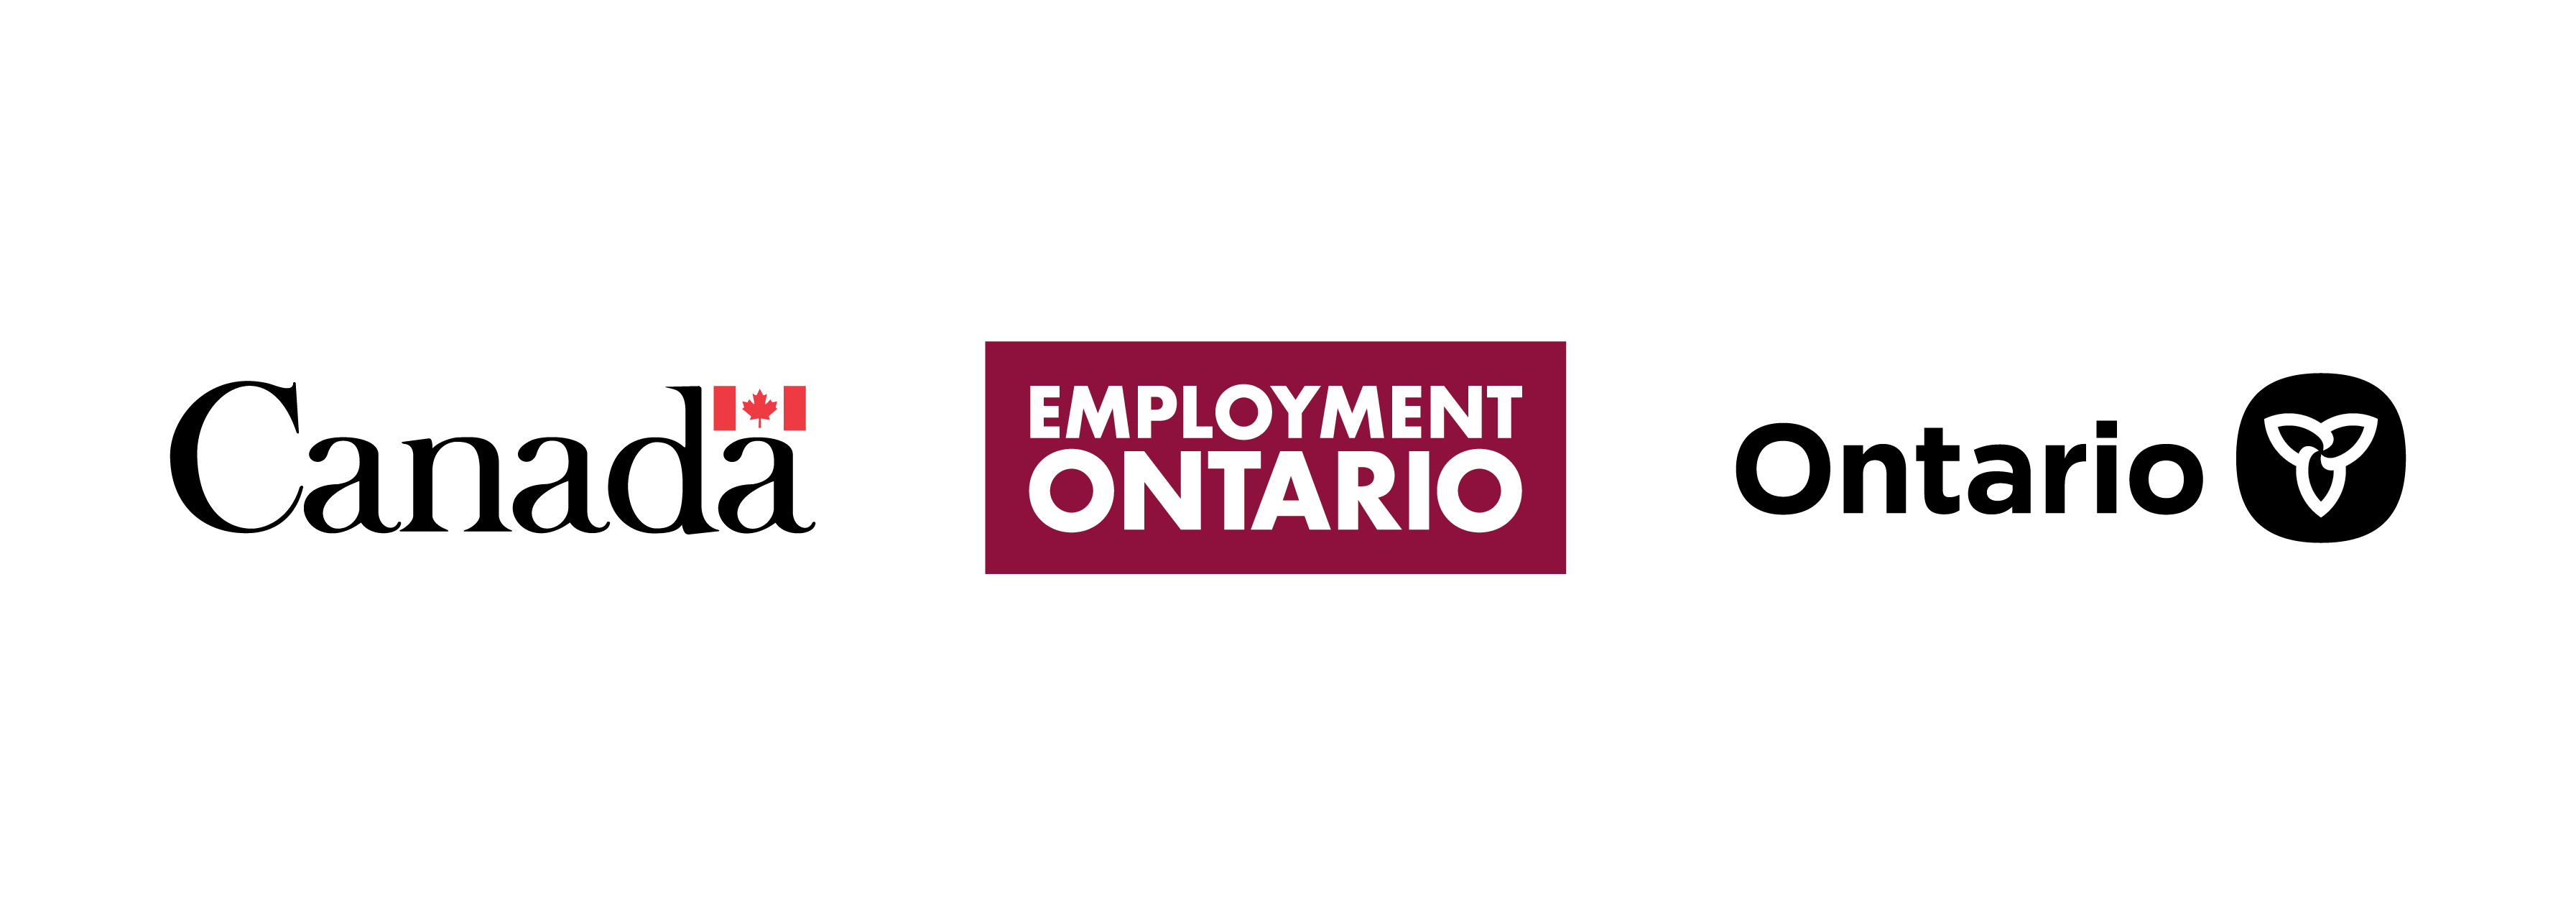 Canada - Employment Ontario - Ontario